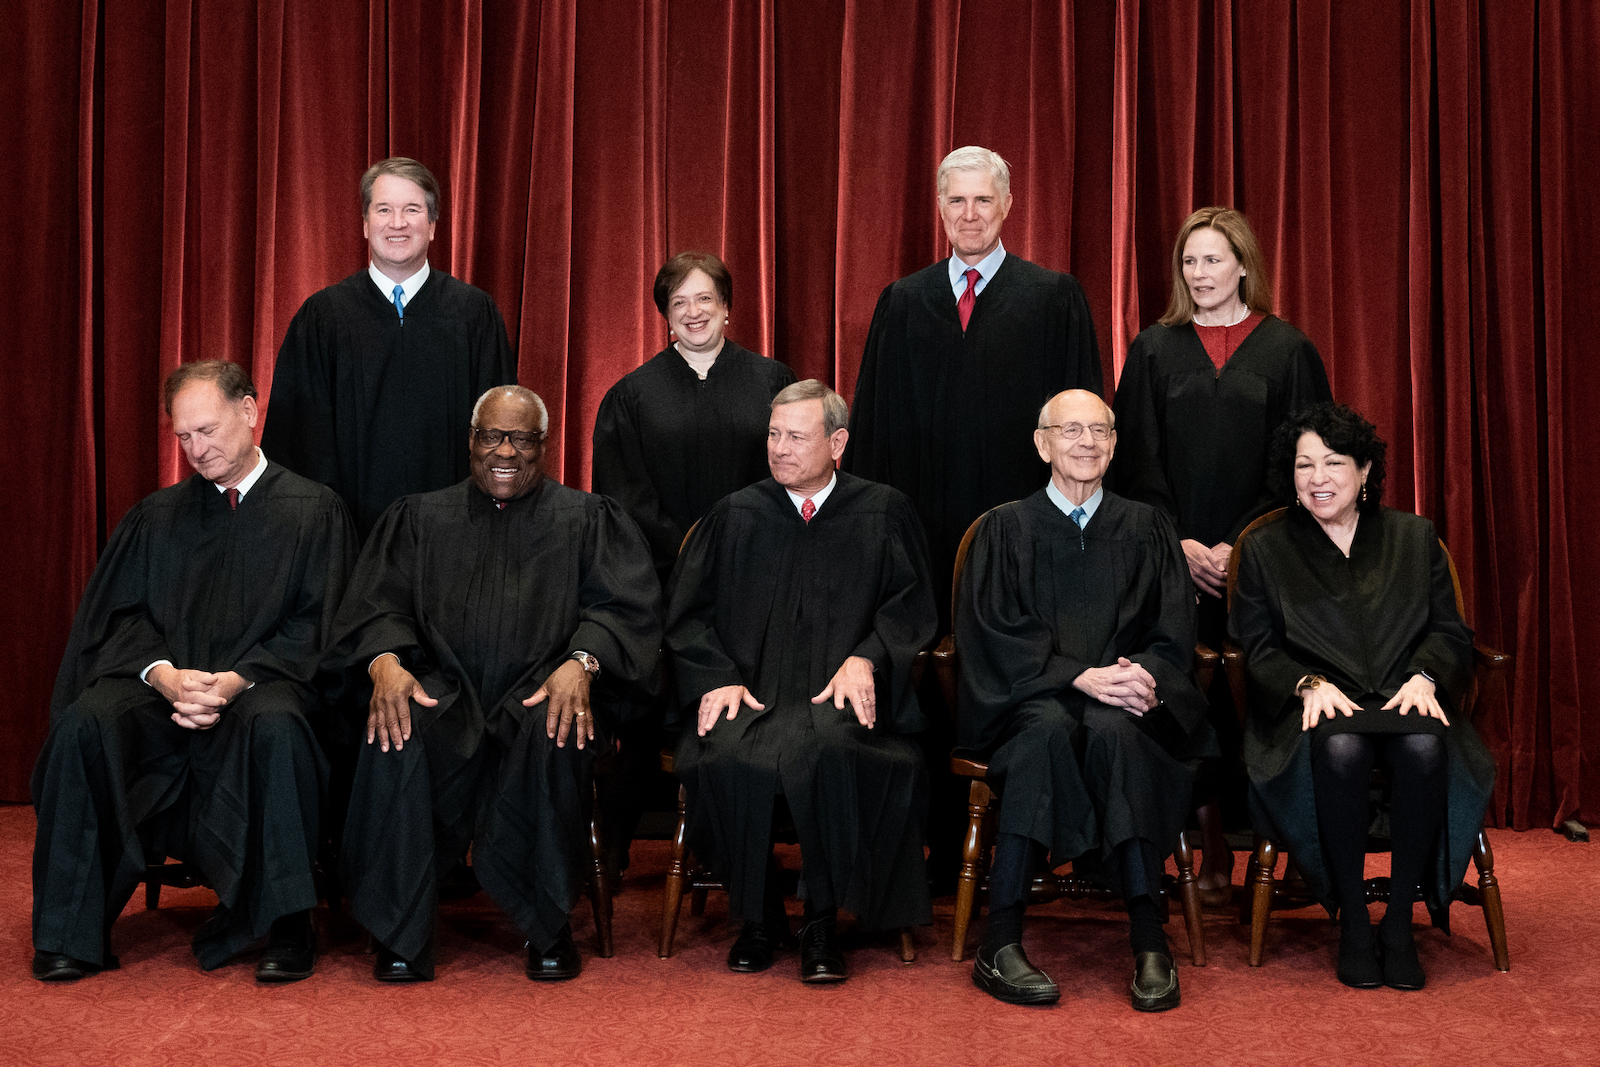 The Supreme Court’s Originalist Evasions